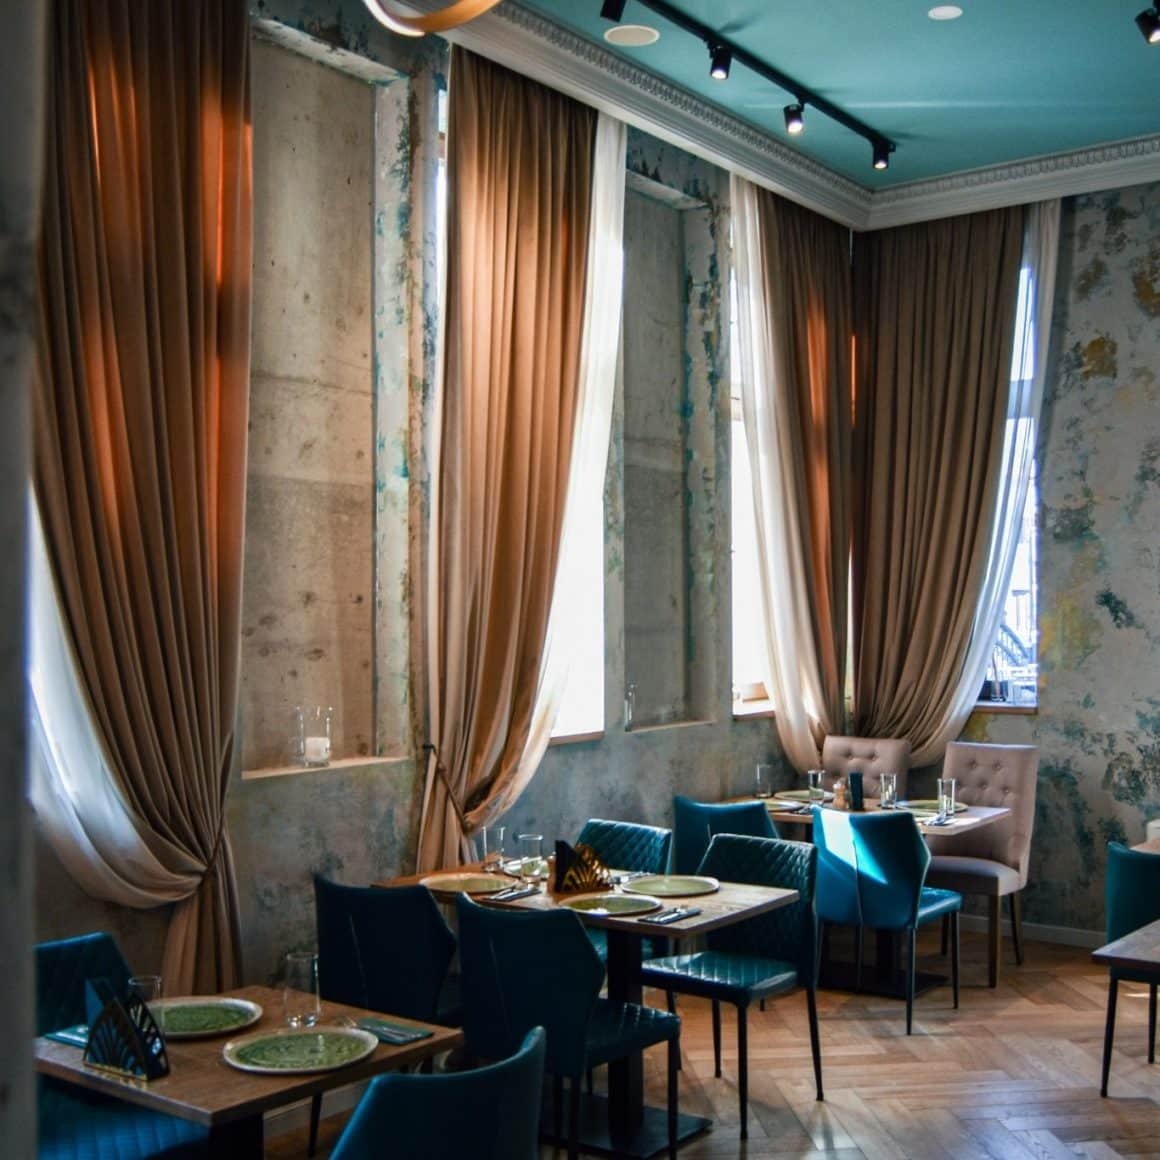 imagine din restaurant Noeme, fotografiat in penumbra, cu geamuri acoperite de draperii. Restaurante unde sa mergi la prima întâlnire